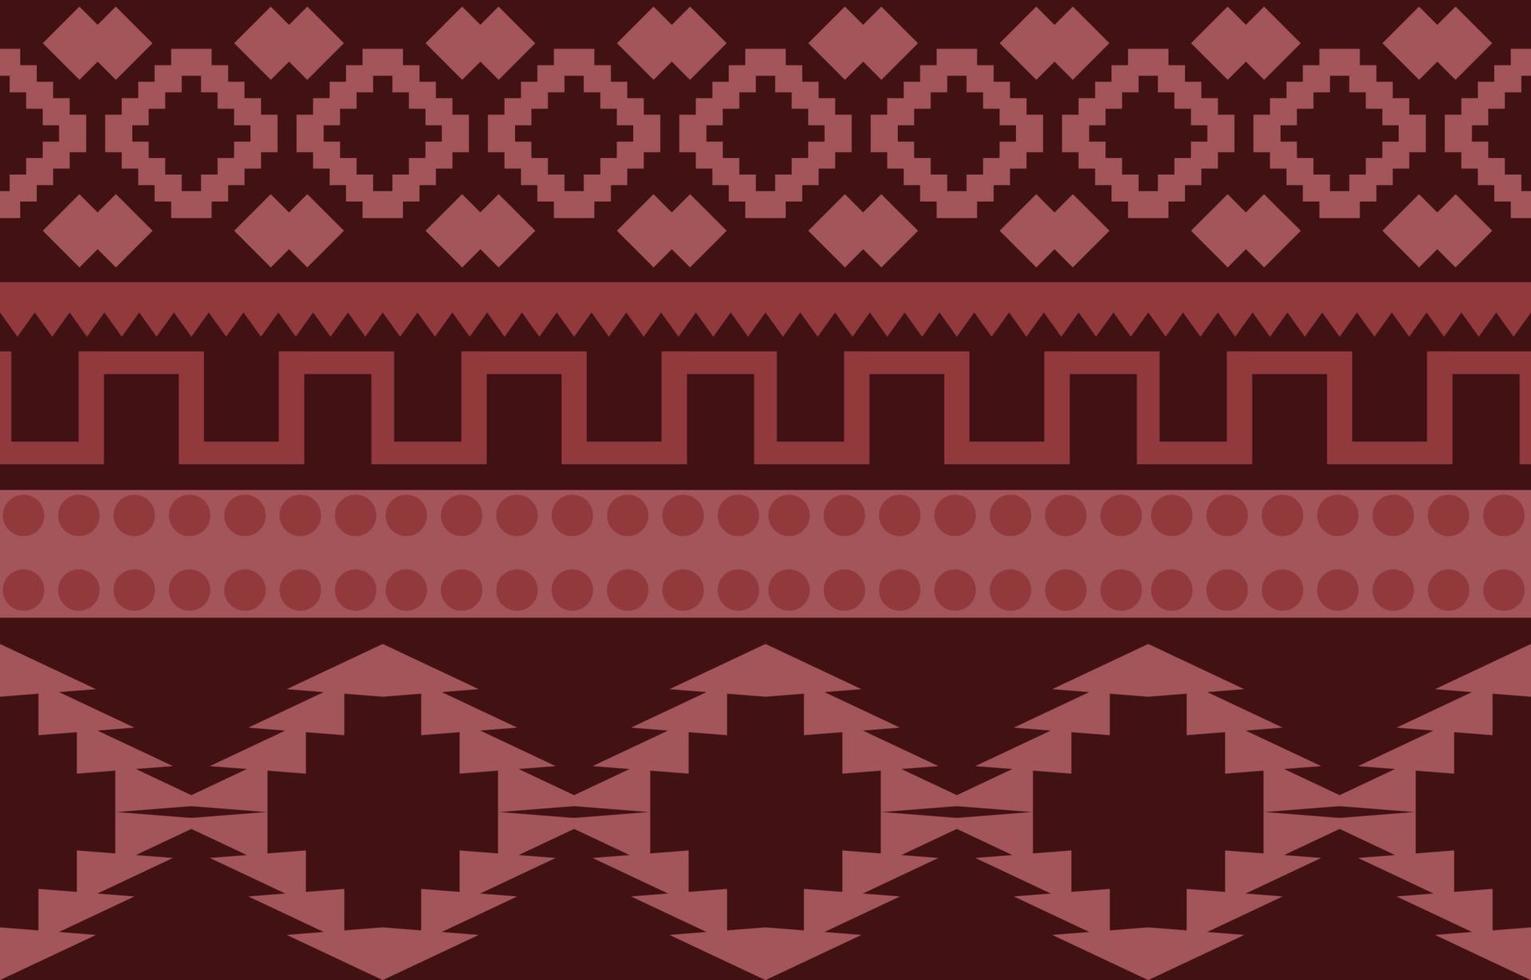 Bạn yêu thích những mẫu vải bản địa của Mỹ? Hãy khám phá ngay mẫu vải bản địa Navajo, với họa tiết bất tận hình khối độc đáo và đẹp mắt! Những dòng vải này mang đậm chất Mỹ, tỉ mỉ trong từng đường nét và tôn lên nét đẹp bản sắc của dân tộc Navajo. Hãy cùng trải nghiệm nét đẹp của văn hóa Mỹ bản địa.